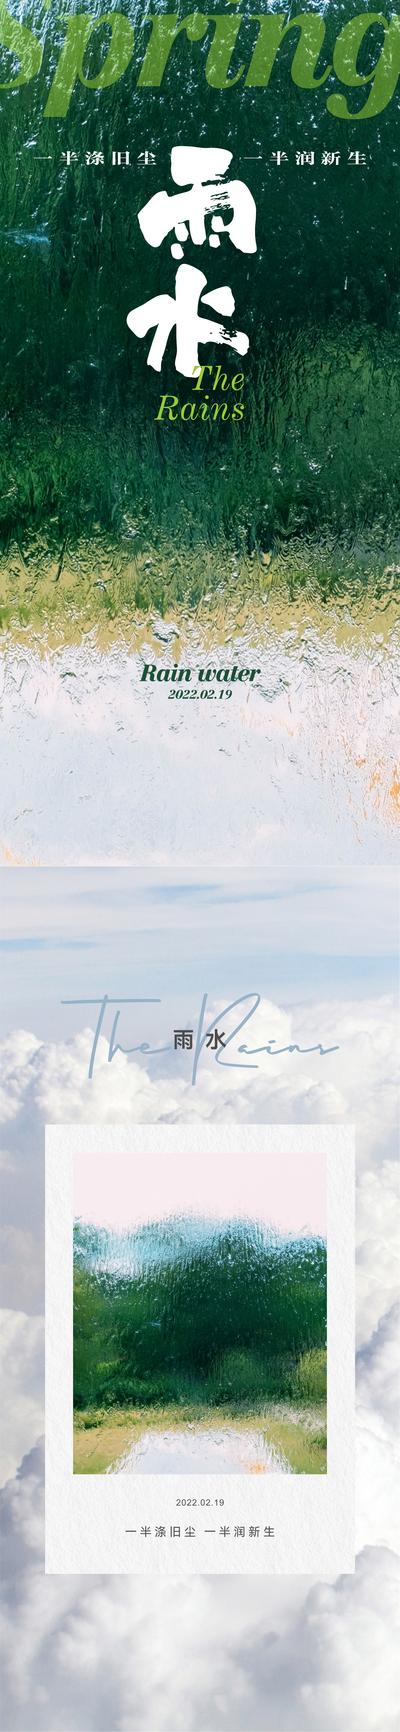 南门网 广告 海报 节气 雨水 雨滴 唯美 系列 书法